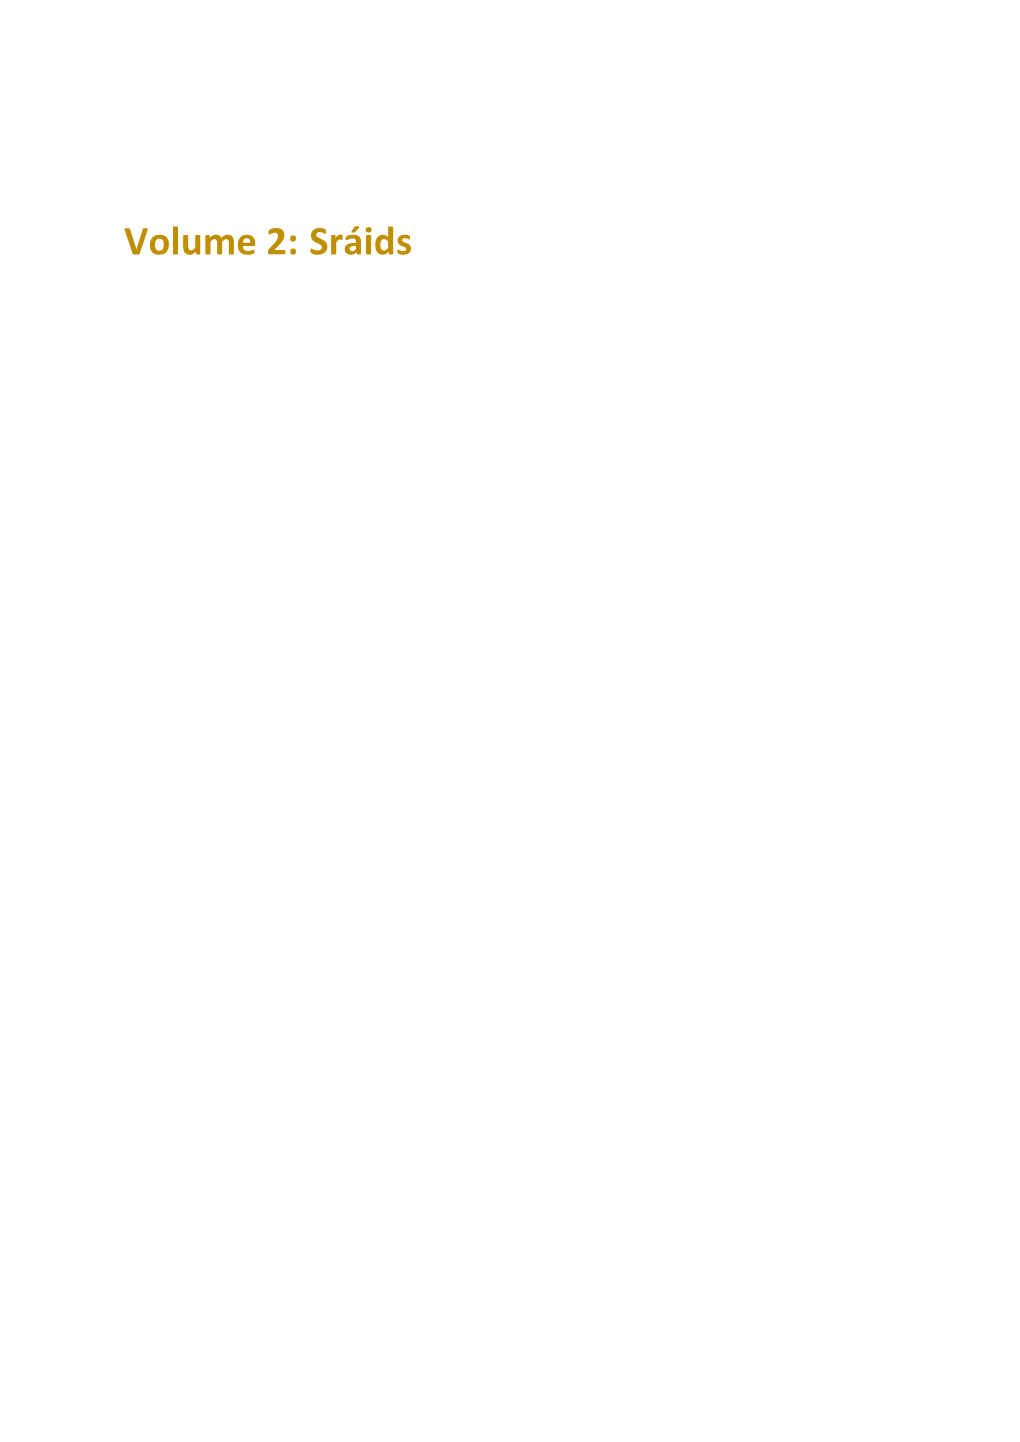 Volume 2: Sráids